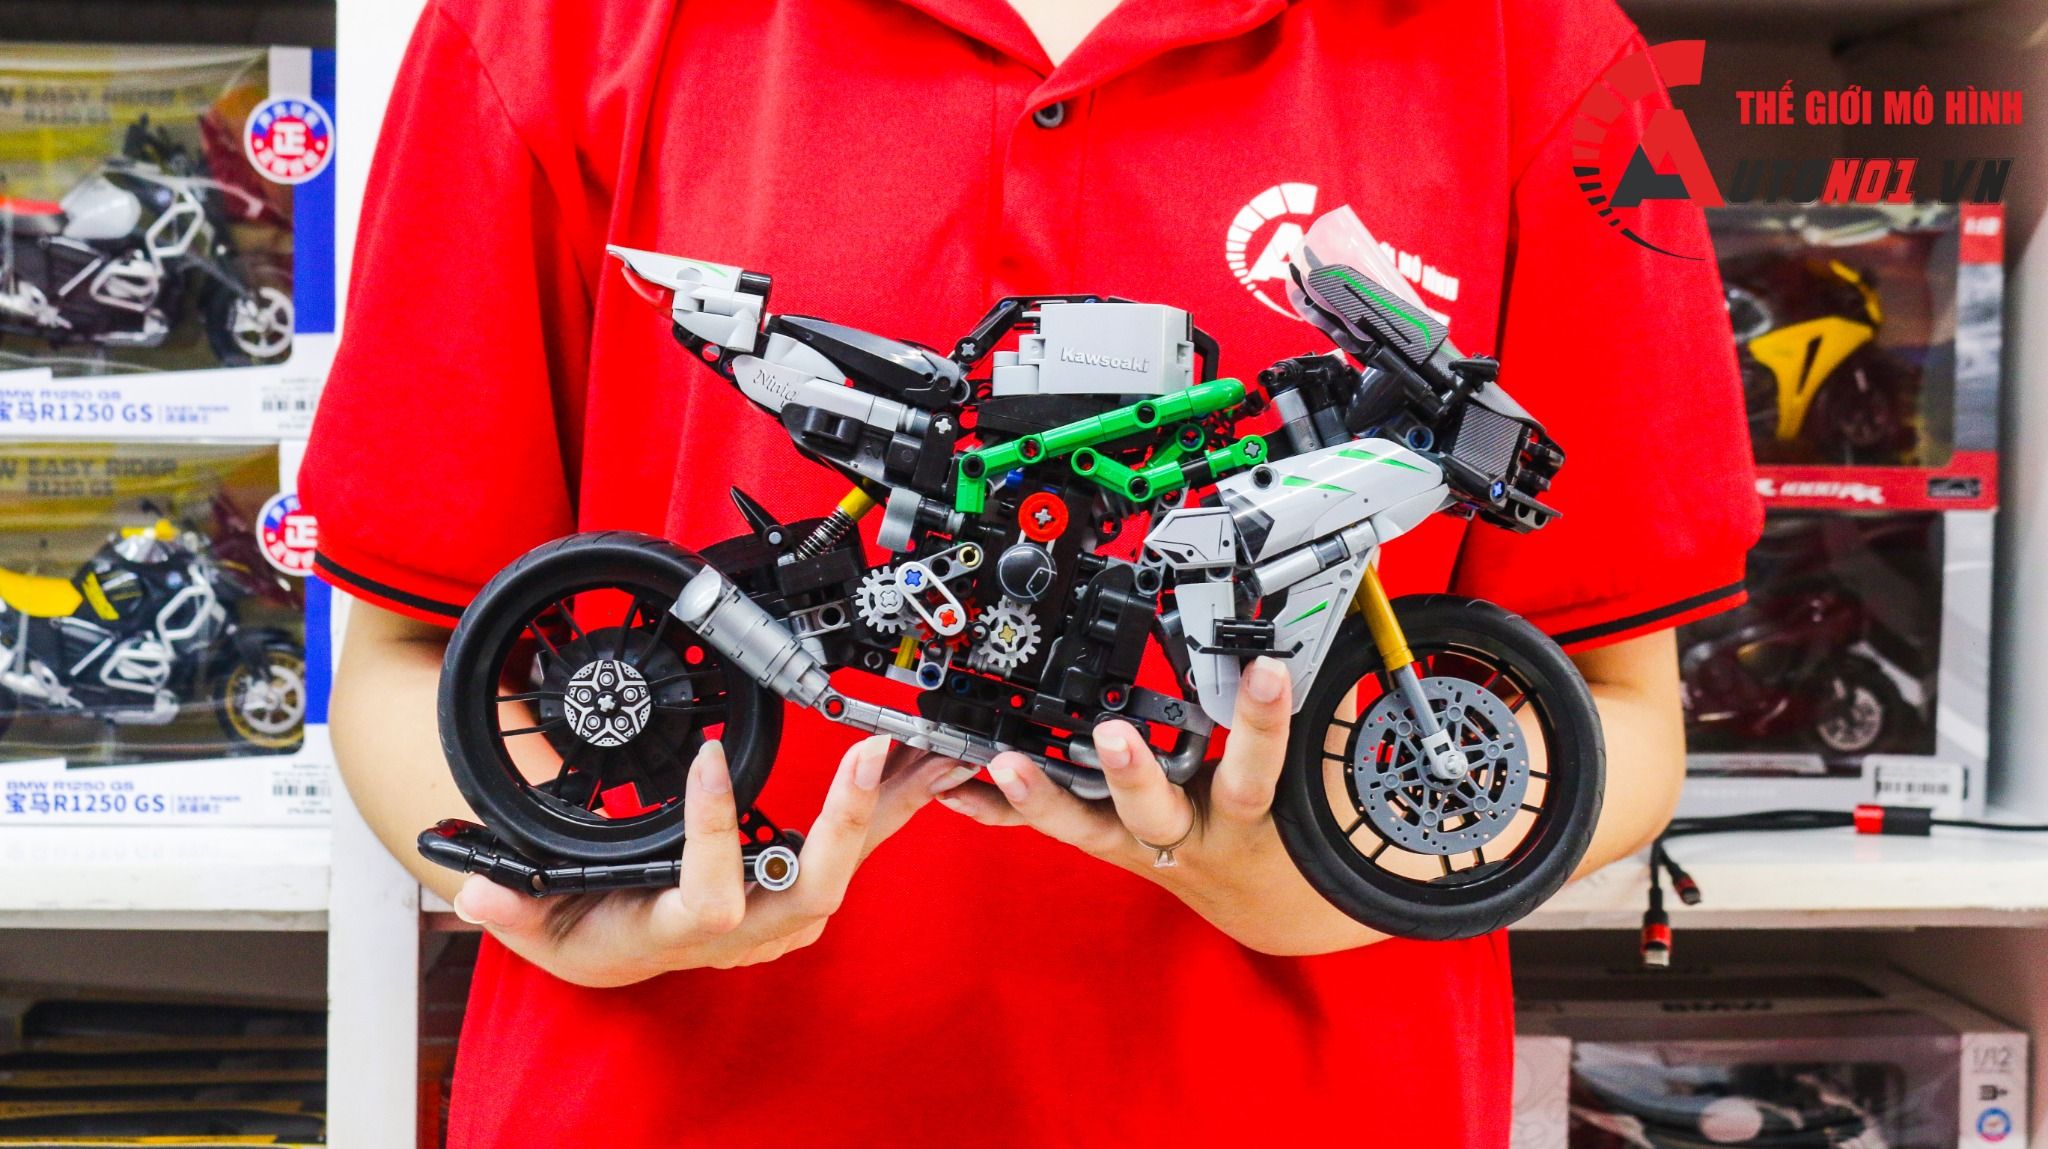  Mô hình xe mô tô lắp ghép Kawasaki Ninja H2R Technic 858 pcs tỉ lệ 1:6 LG006 